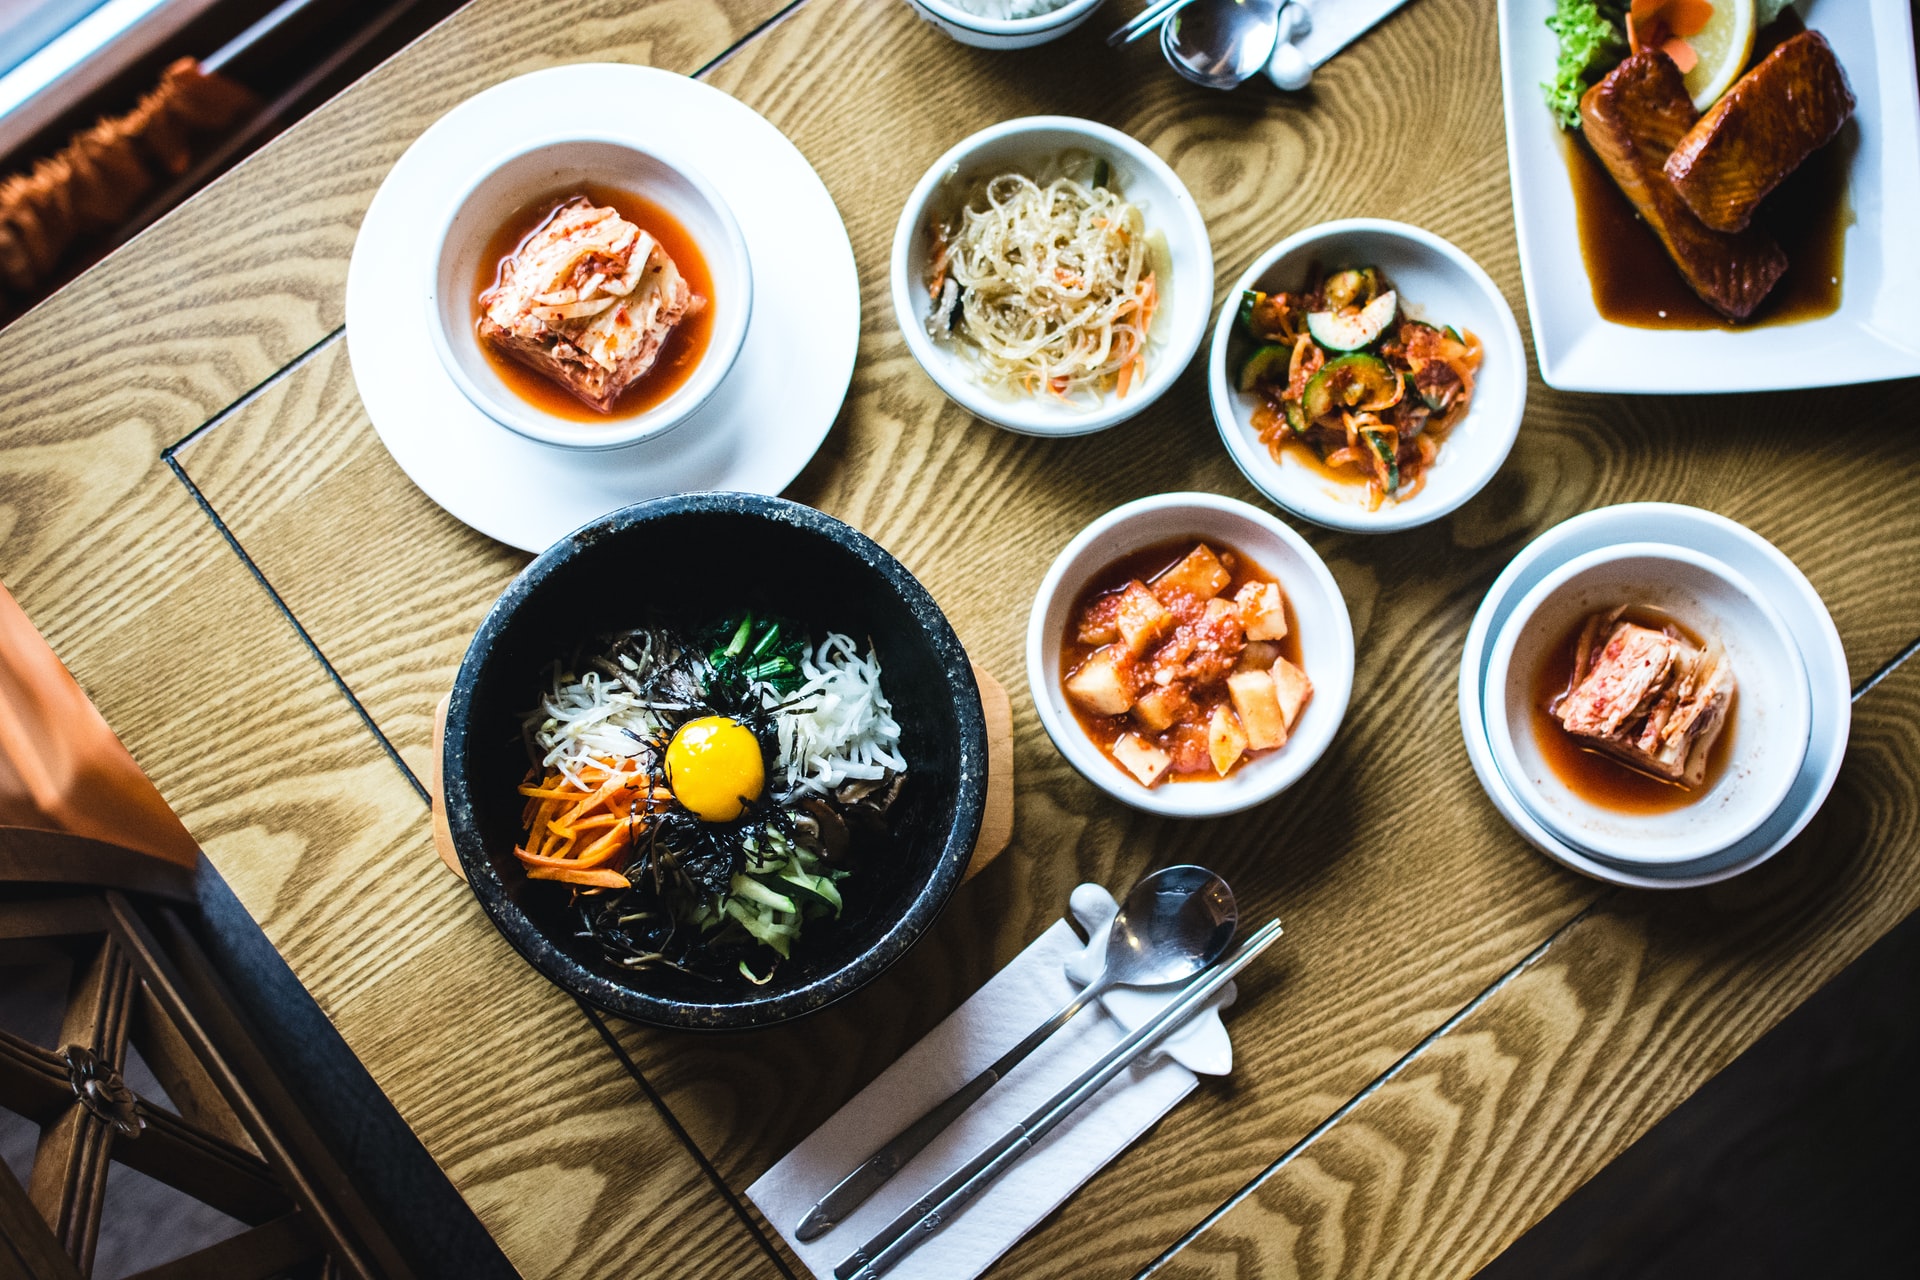 Seo Ra Beol A taste of Korea in San Francisco